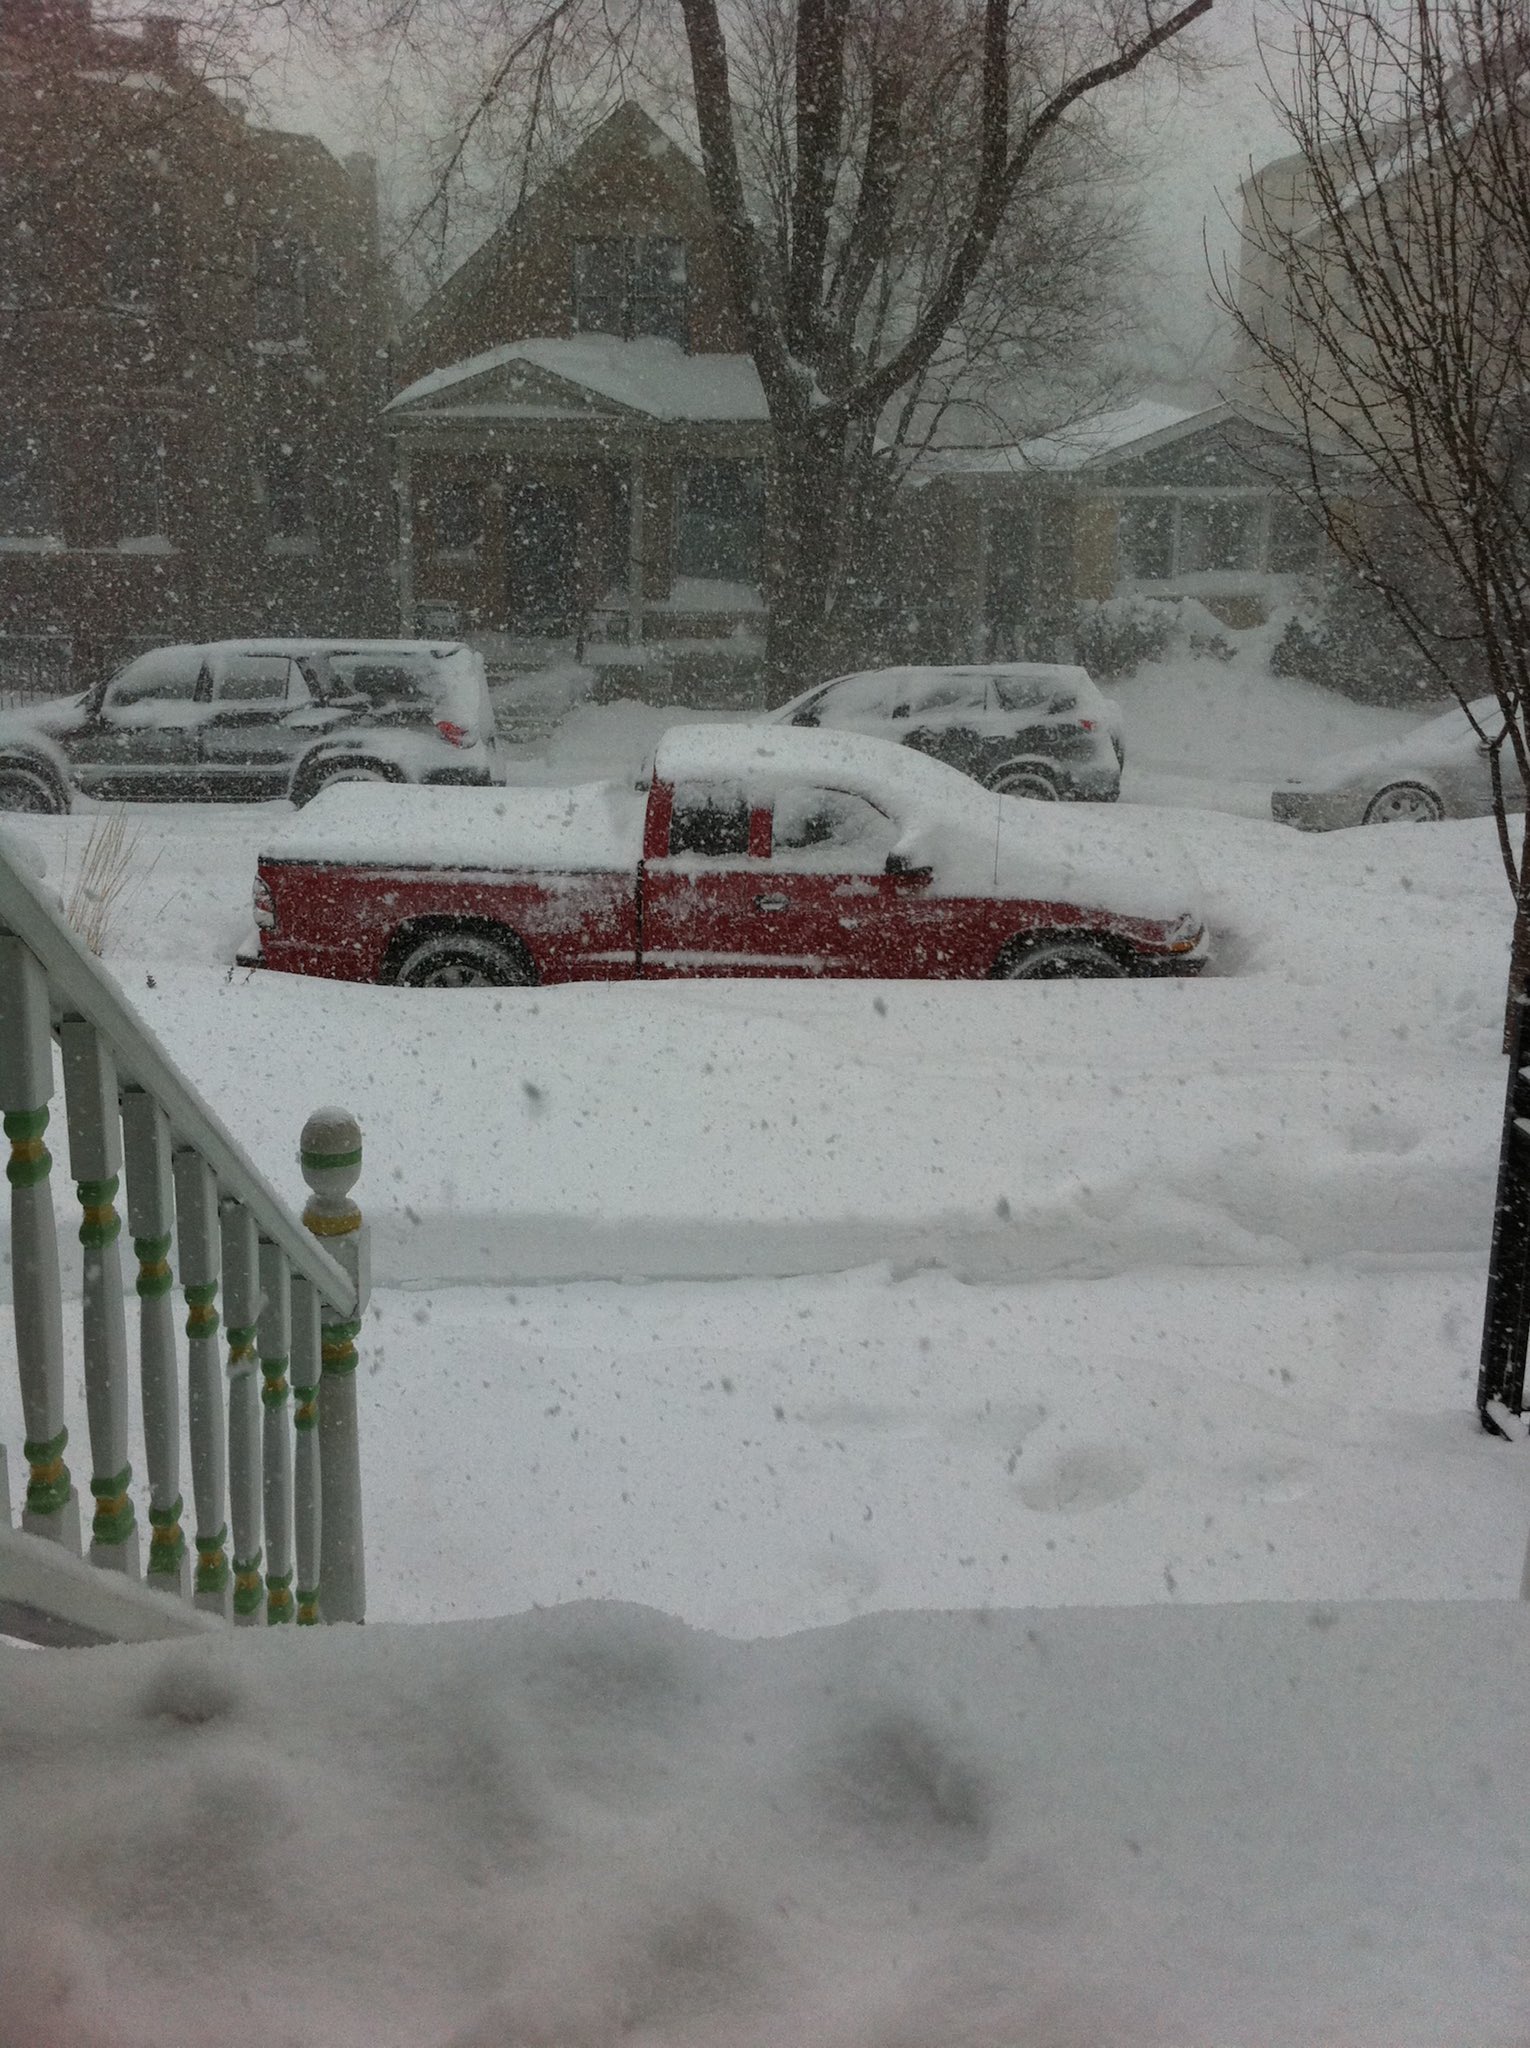 January 31-February 2, 2011 Historic Blizzard